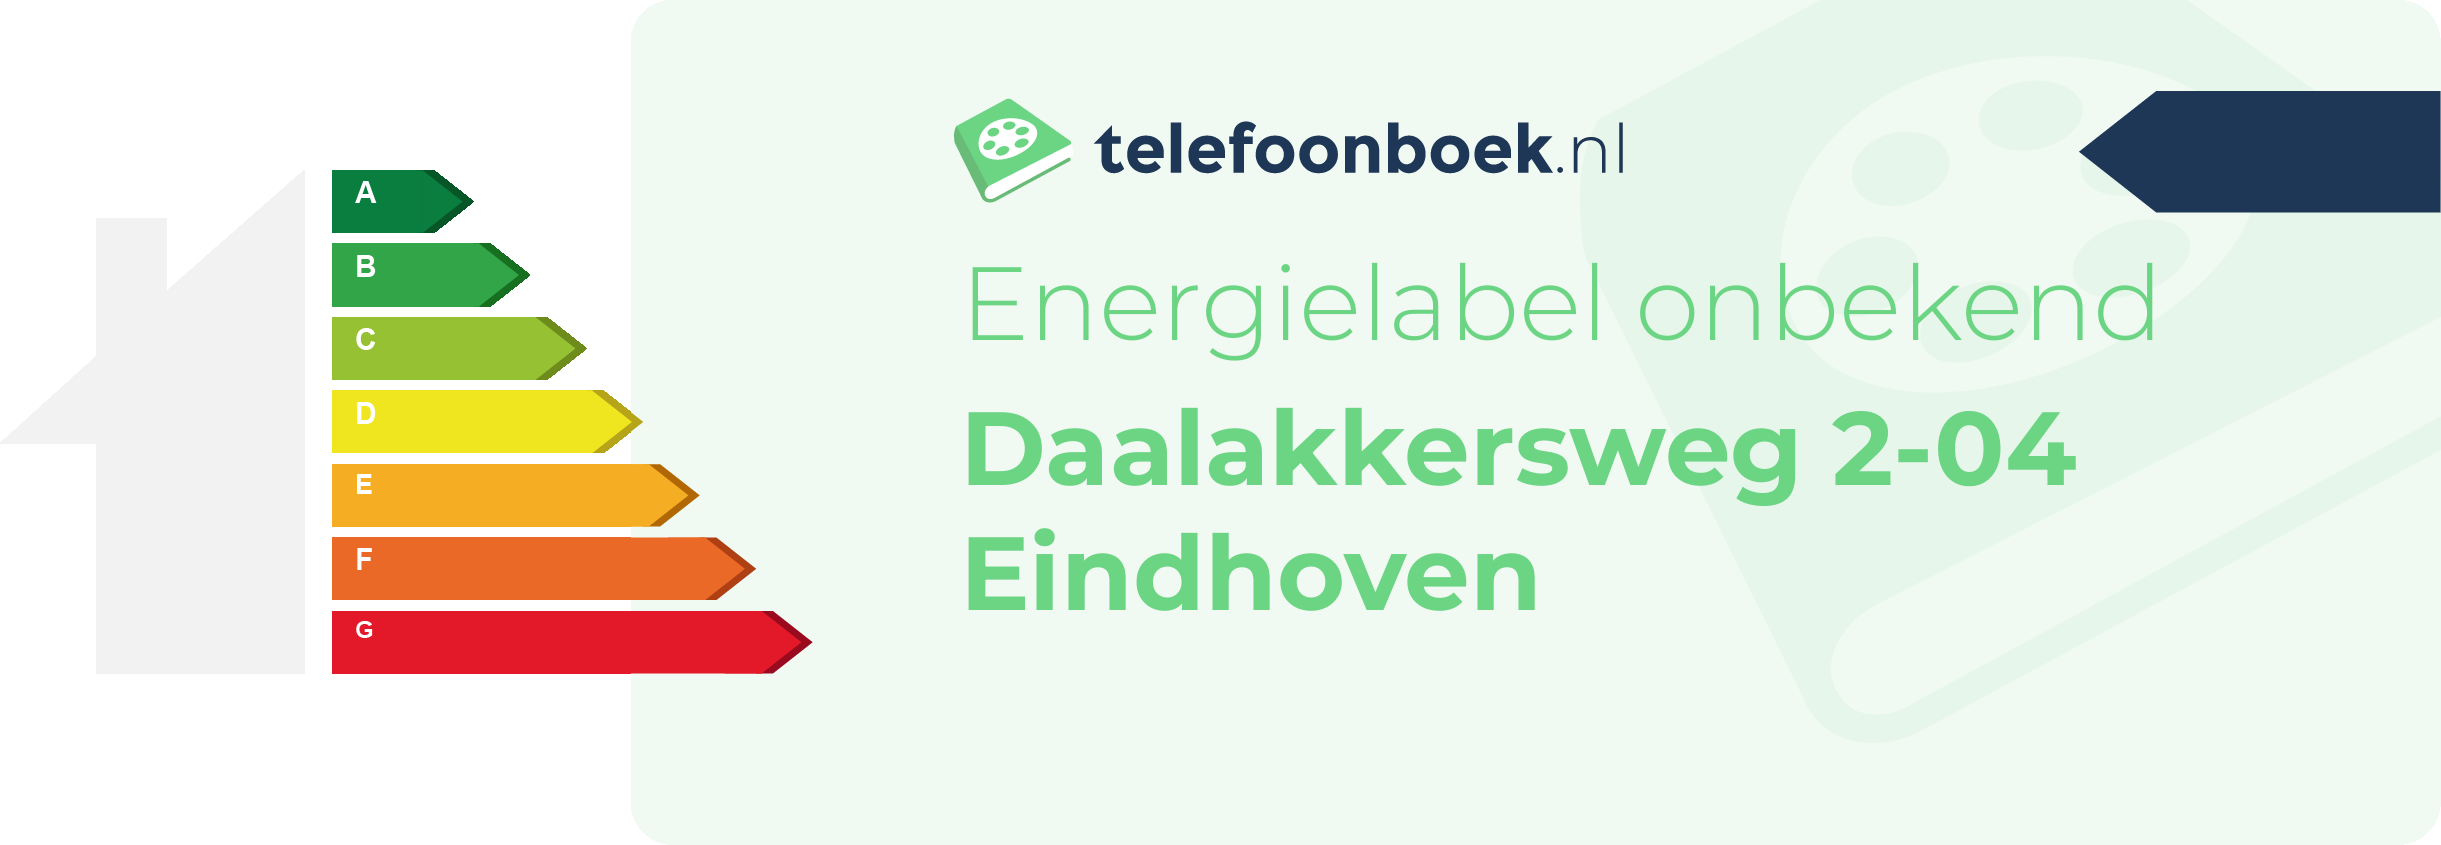 Energielabel Daalakkersweg 2-04 Eindhoven